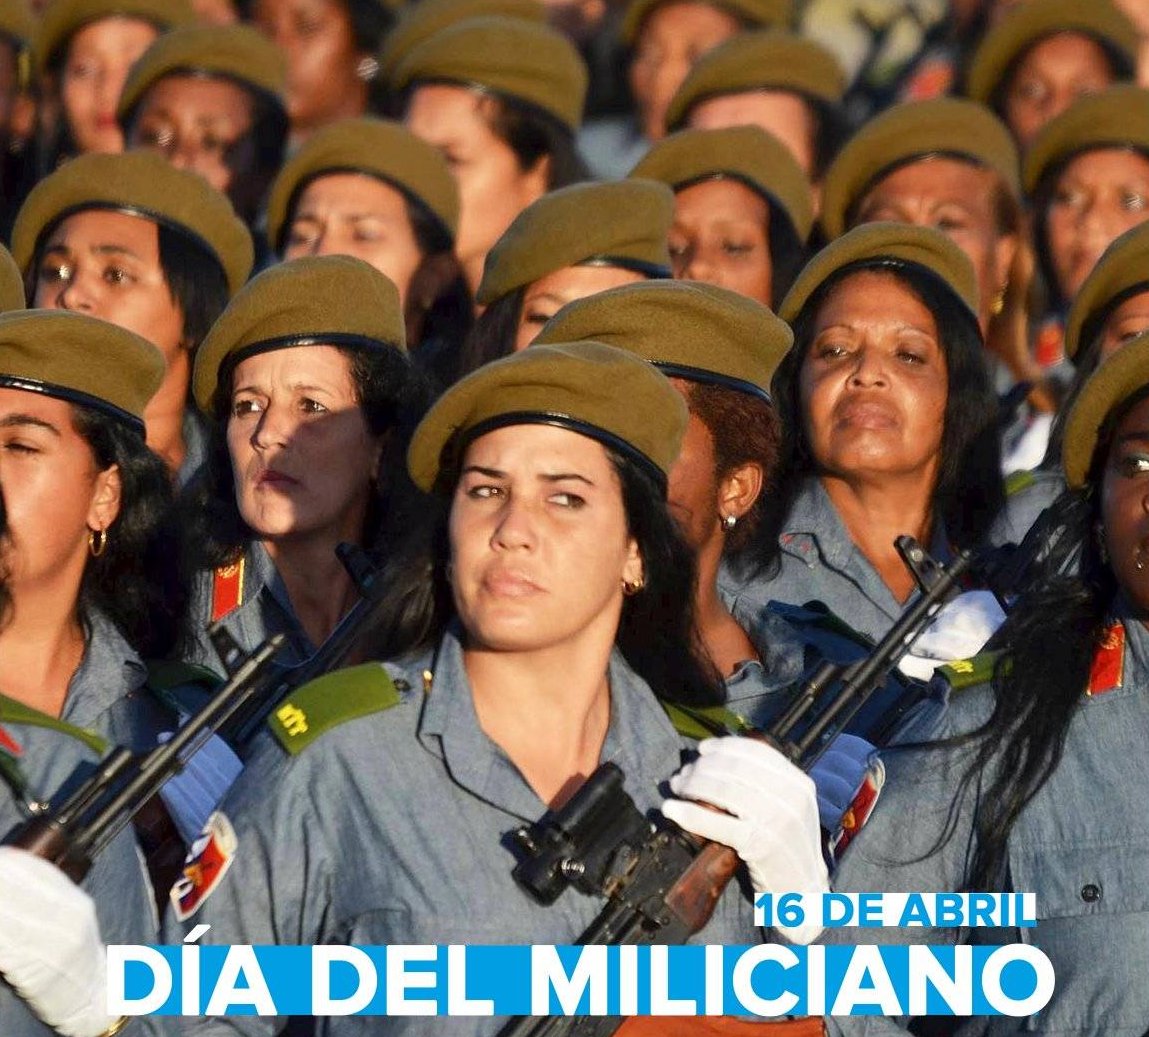 Cada #16Abril 🇨🇺 celebra el #DíadelMiliciano, fecha que recuerda el coraje de hombres y mujeres que en 1961 forjaron un camino de dignidad y libertad. 🎶Milicianos, adelante. Milicianos, a marchar, Solo tenemos un ideal salvar a #Cuba y su libertad.🎶 #CubaViveEnSuHistoria